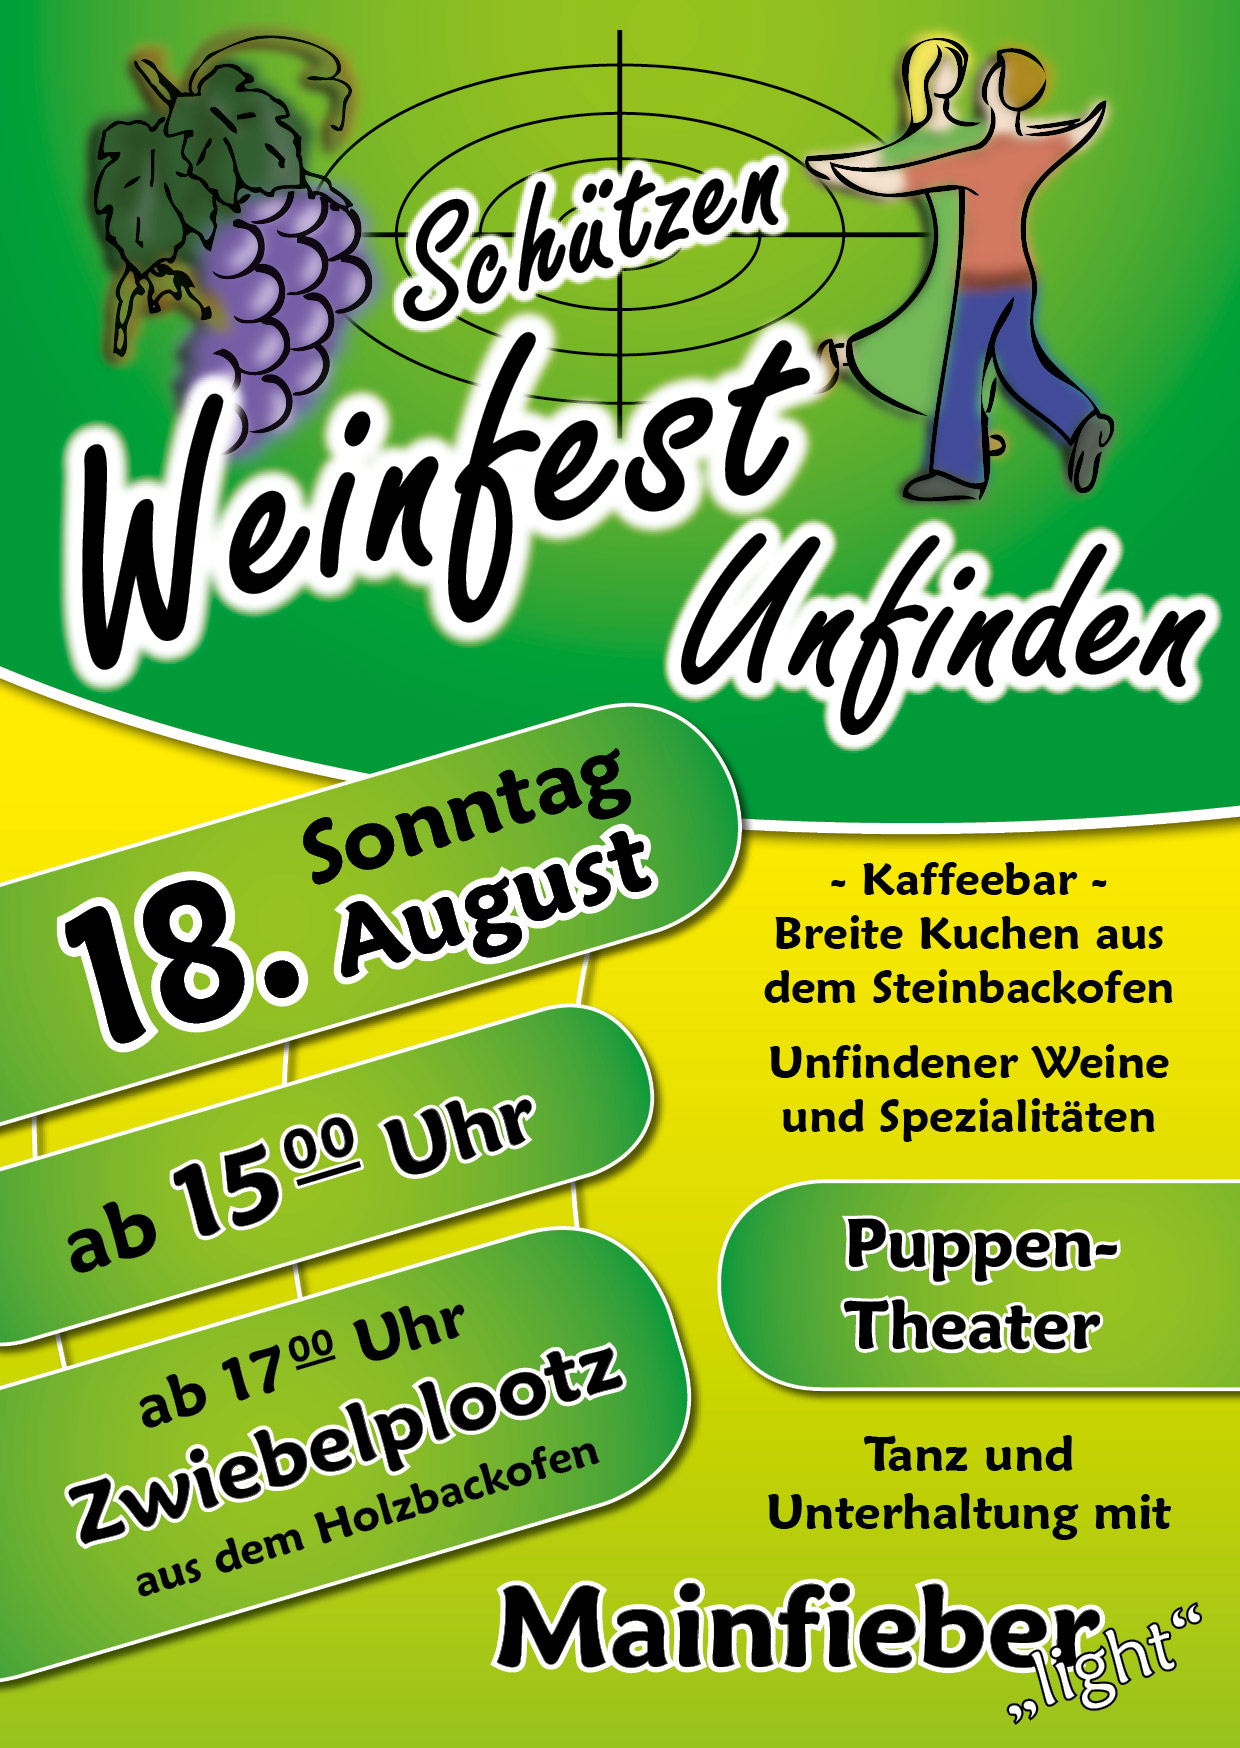 Schützen Weinfest am 18. August 2019 in Unfinden